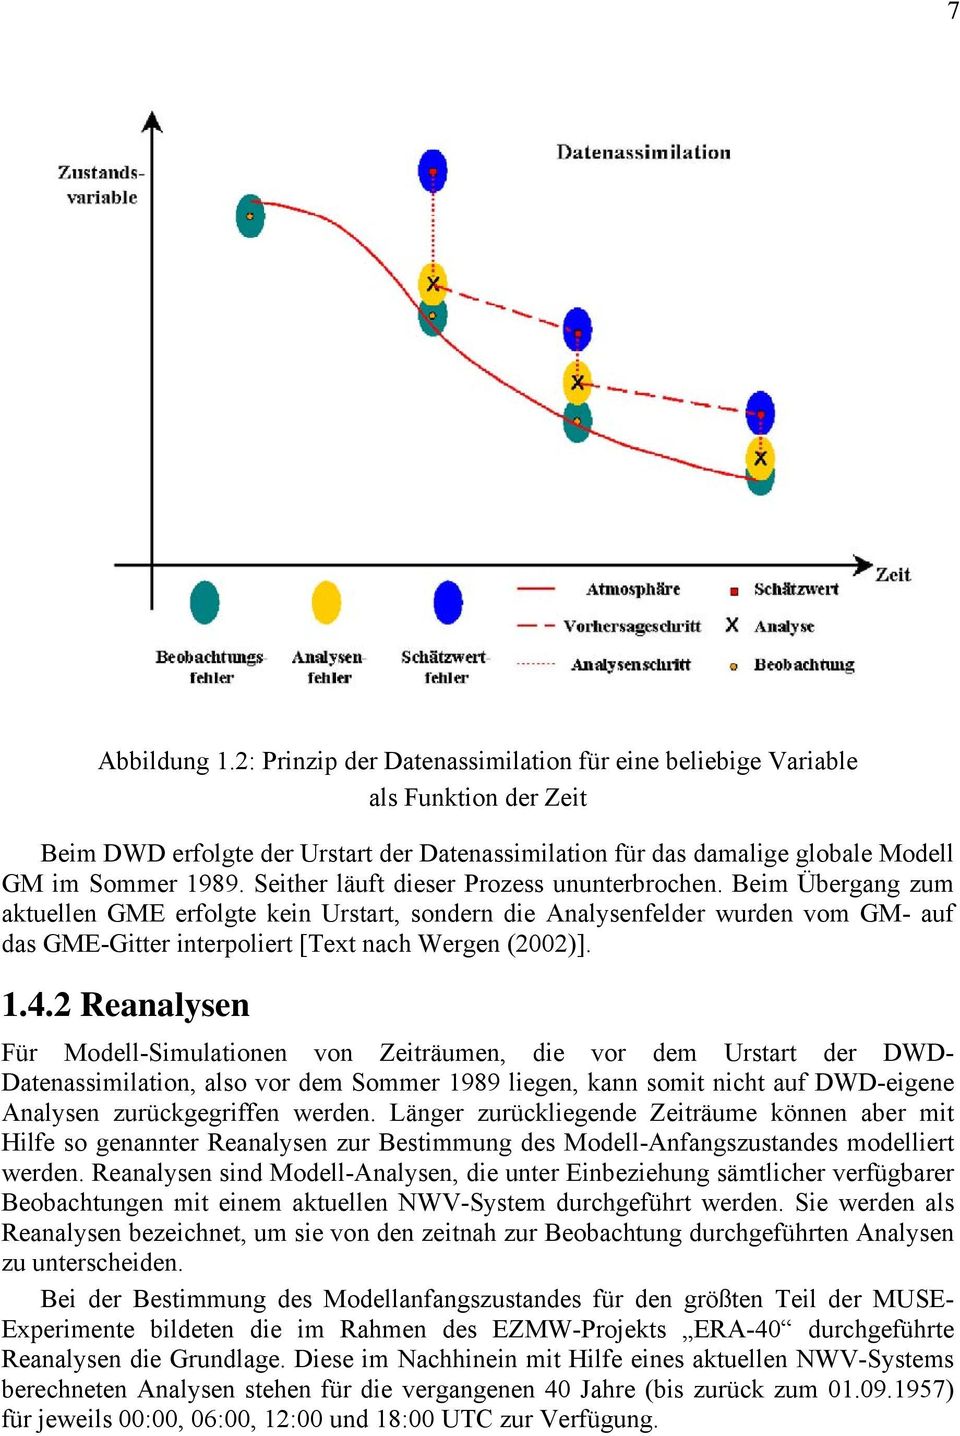 1.4.2 Reanalysen Für Modell-Simulationen von Zeiträumen, die vor dem Urstart der DWD- Datenassimilation, also vor dem Sommer 1989 liegen, kann somit nicht auf DWD-eigene Analysen zurückgegriffen